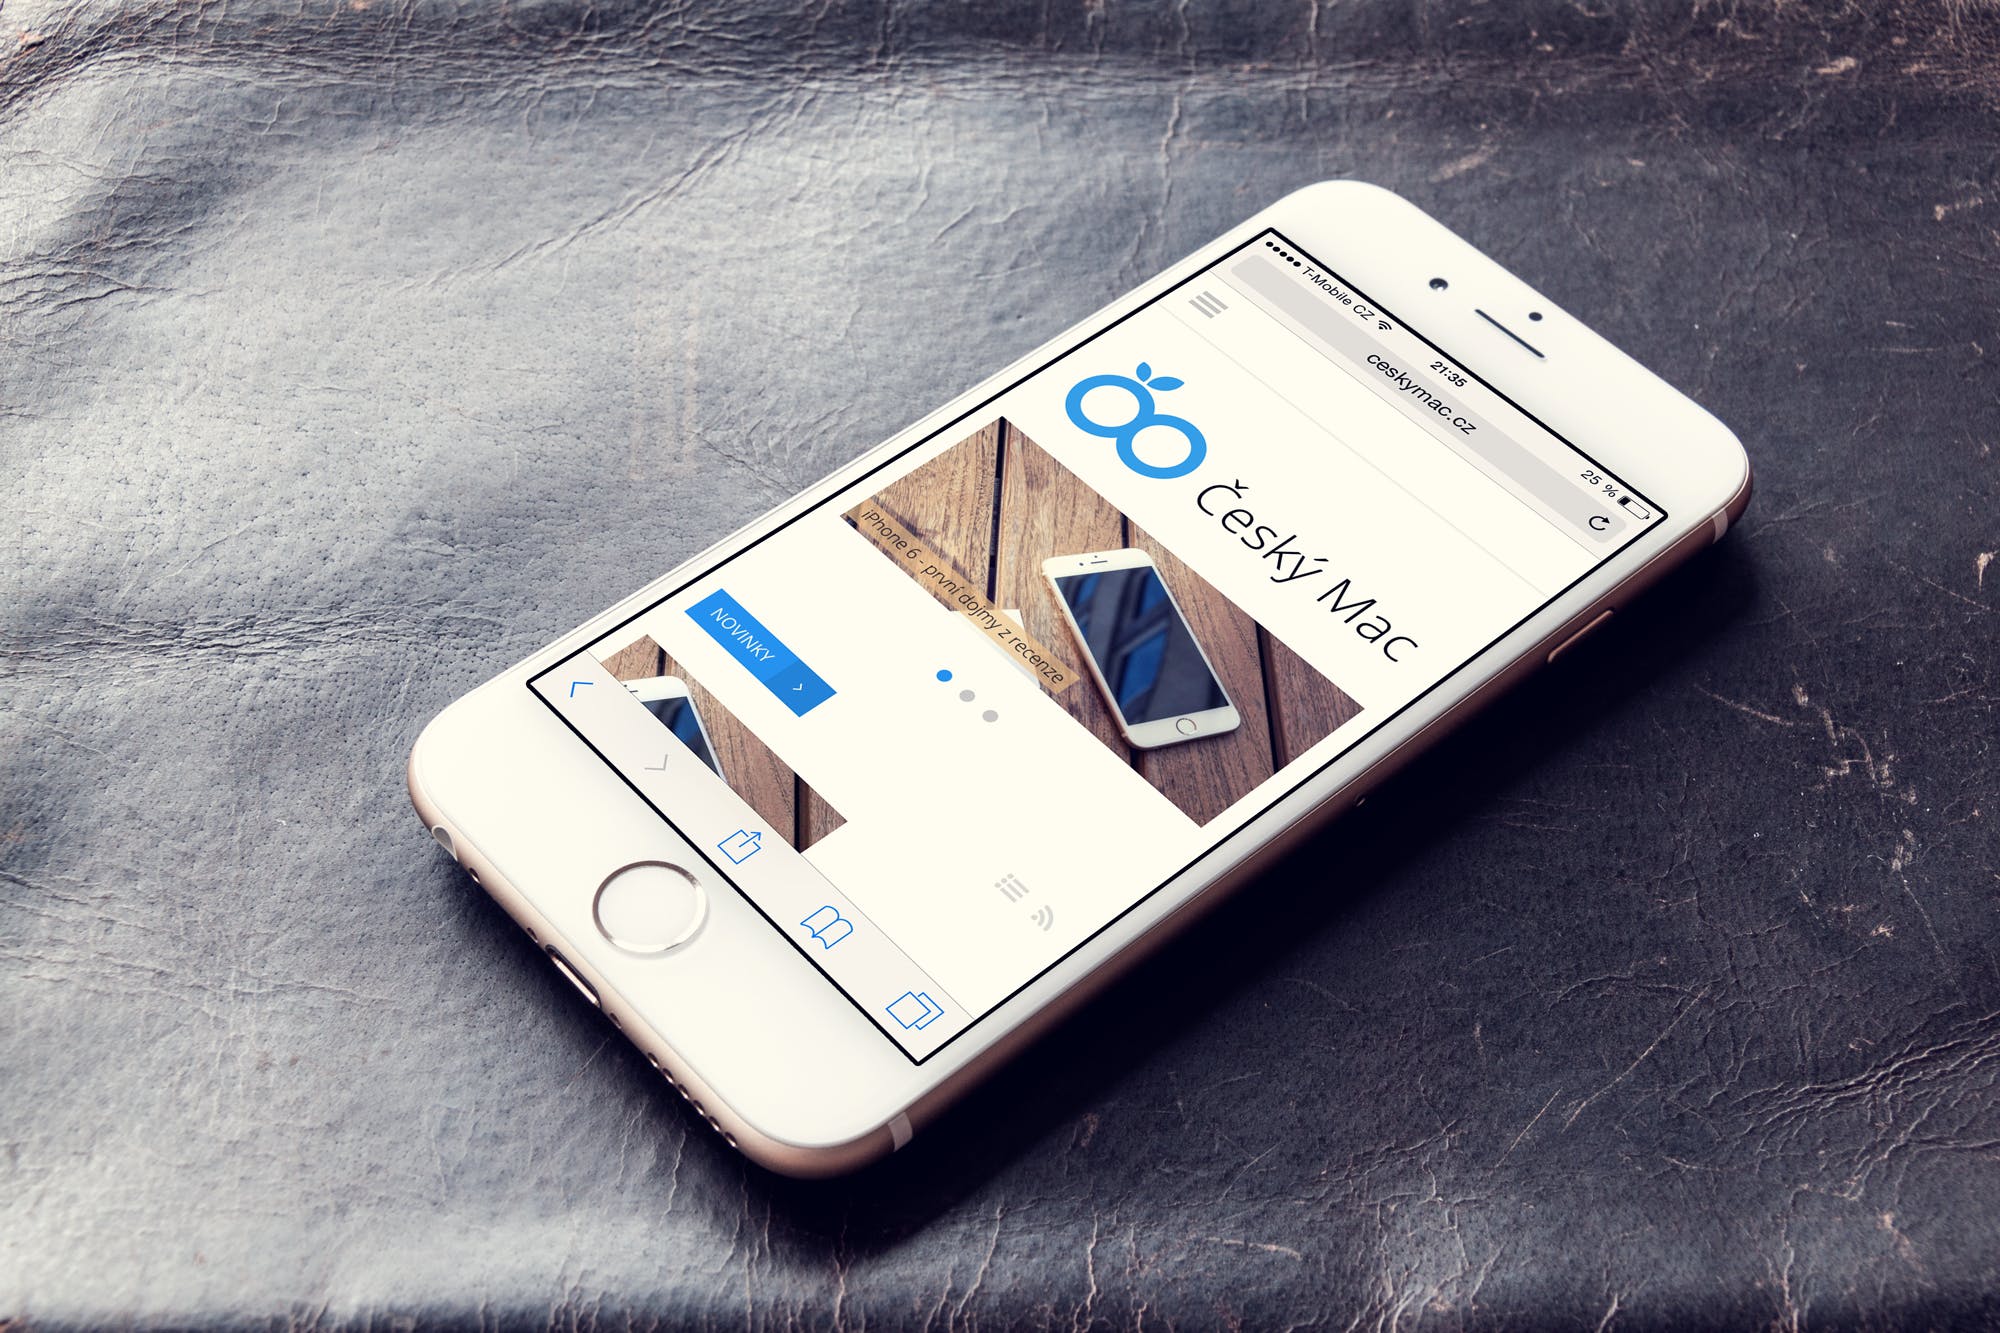 实景背景实体按键款iPhone手机屏幕预览第一素材精选样机 Phone 6 – Photorealistic Mock-Up插图(9)